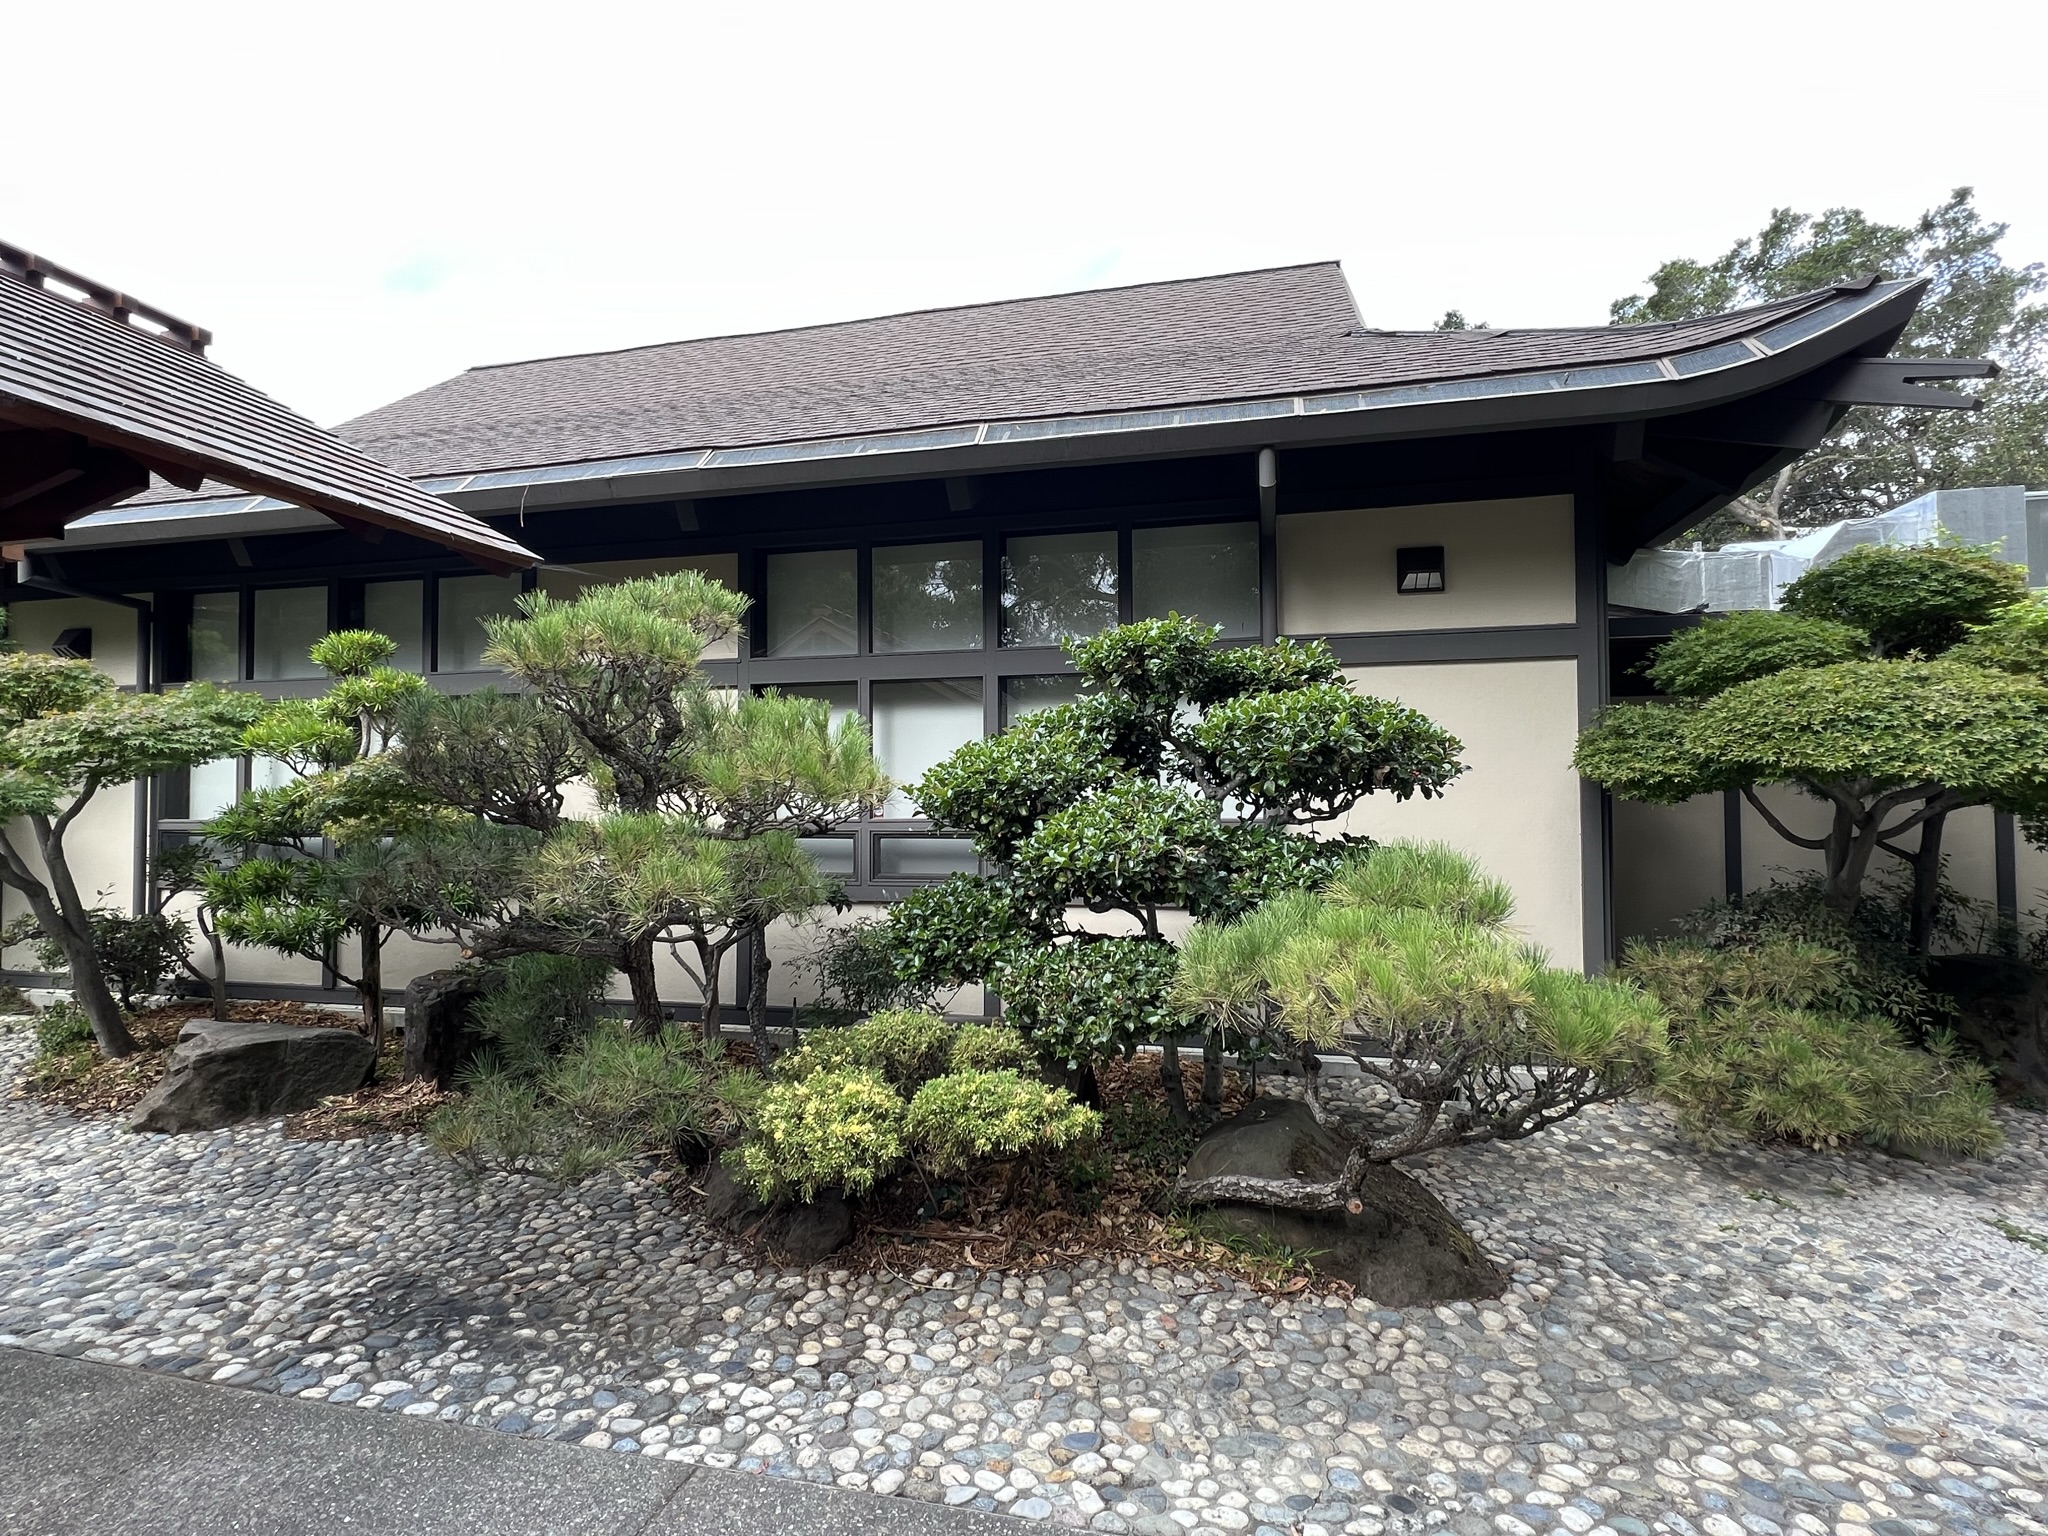 建筑和树木都是日本风格的